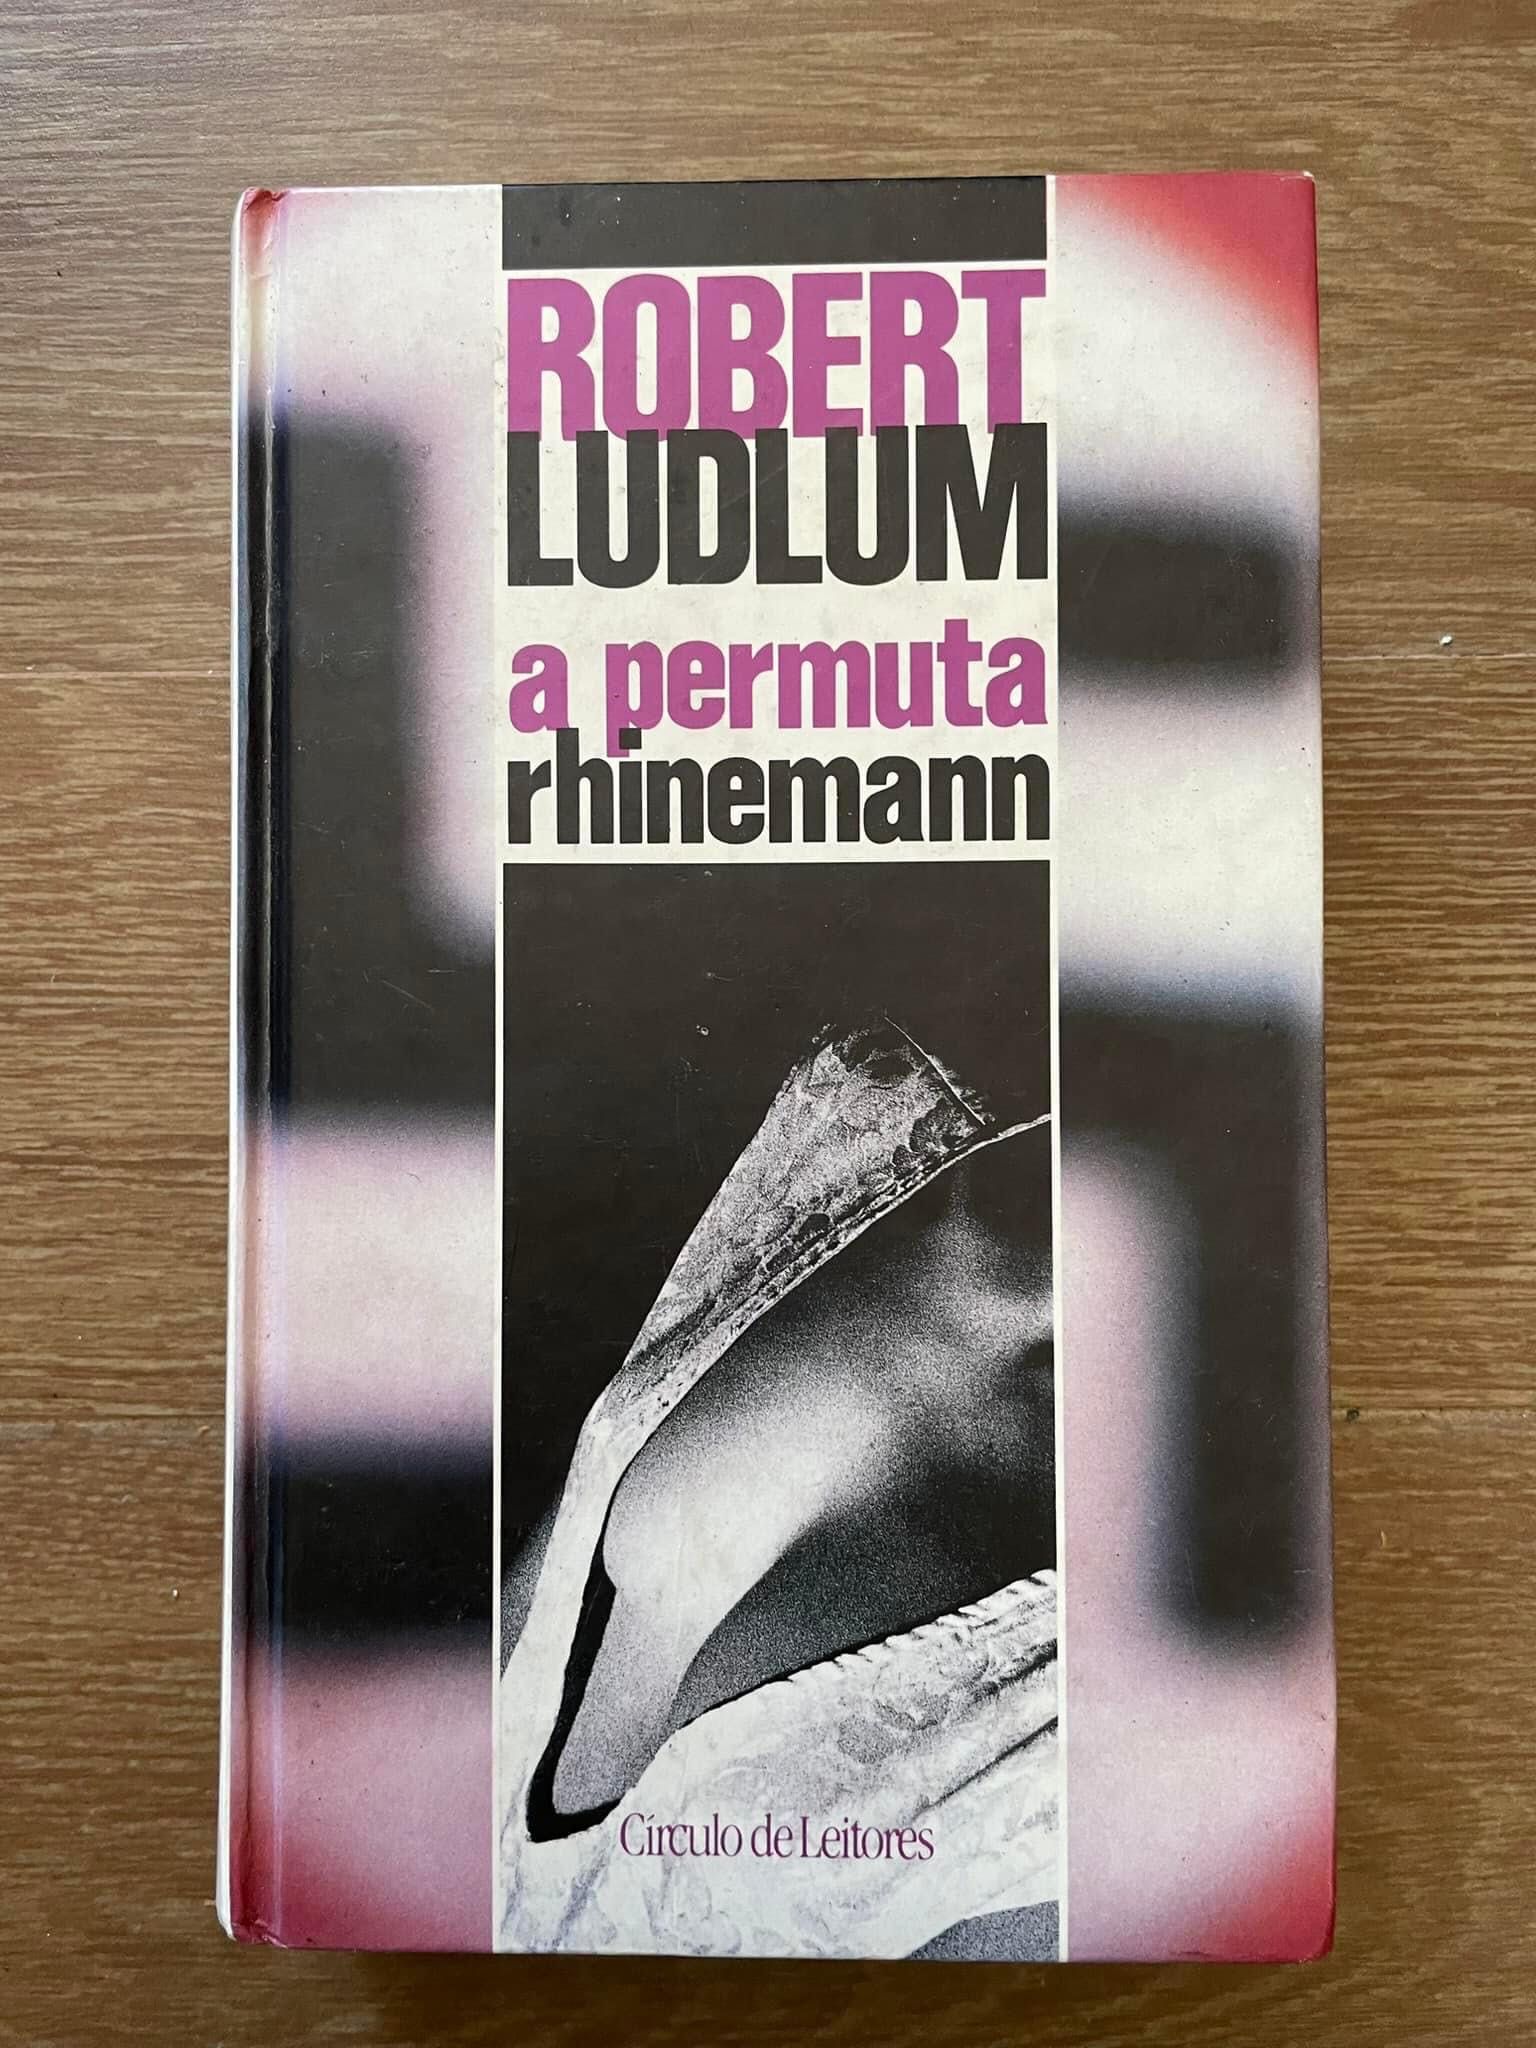 A Permuta Rhinemann - Robert Ludlum (portes grátis)